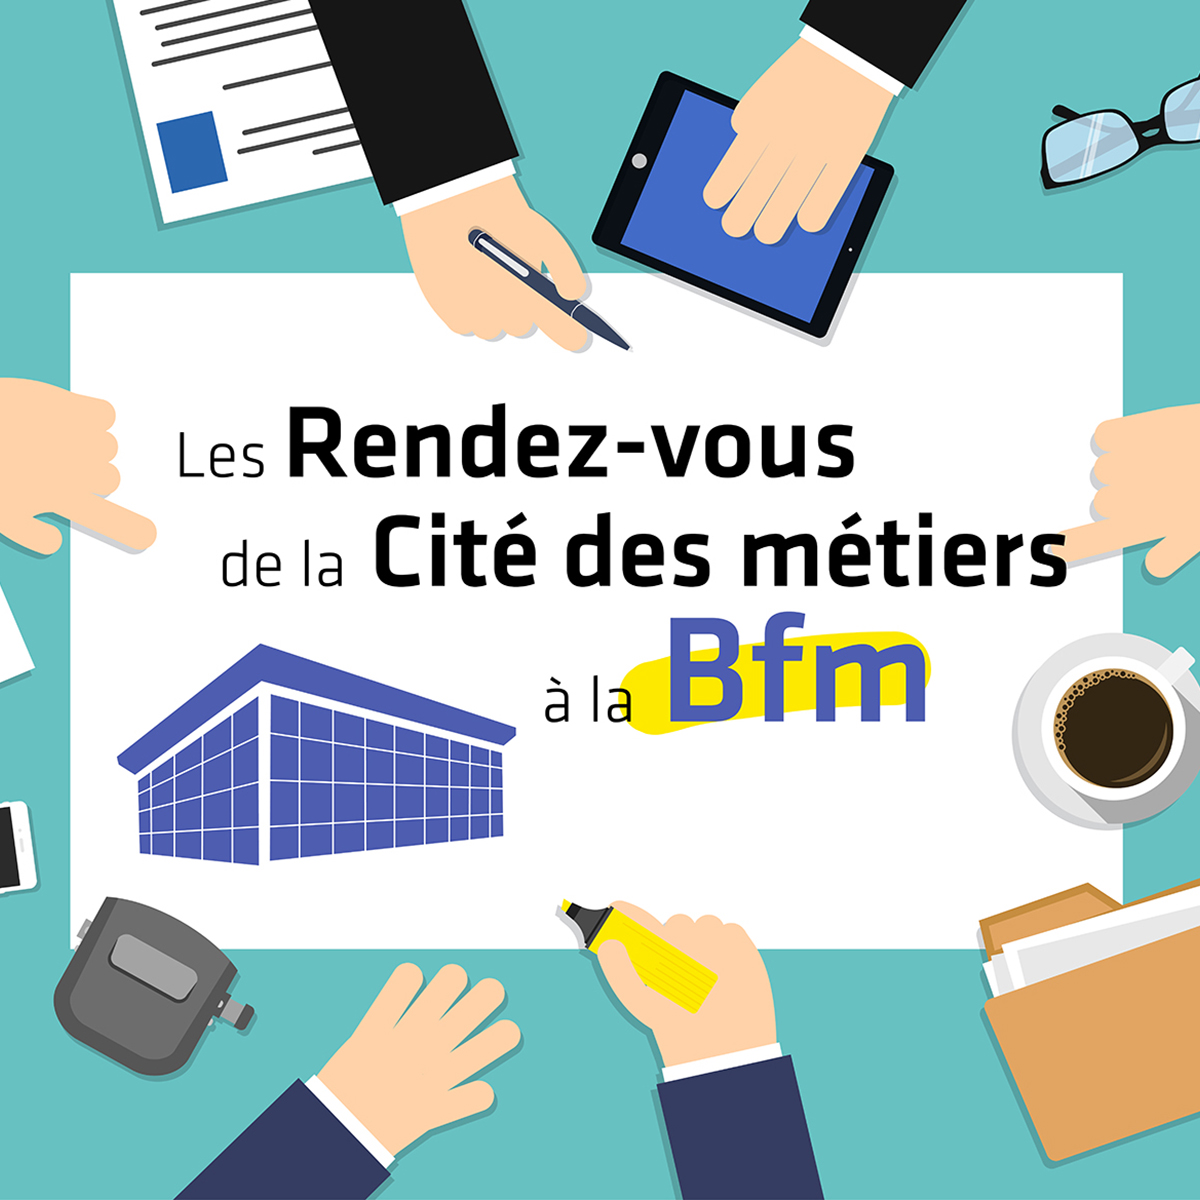 Les Rendez-vous de la Cité des métiers à la BFM de Limoges